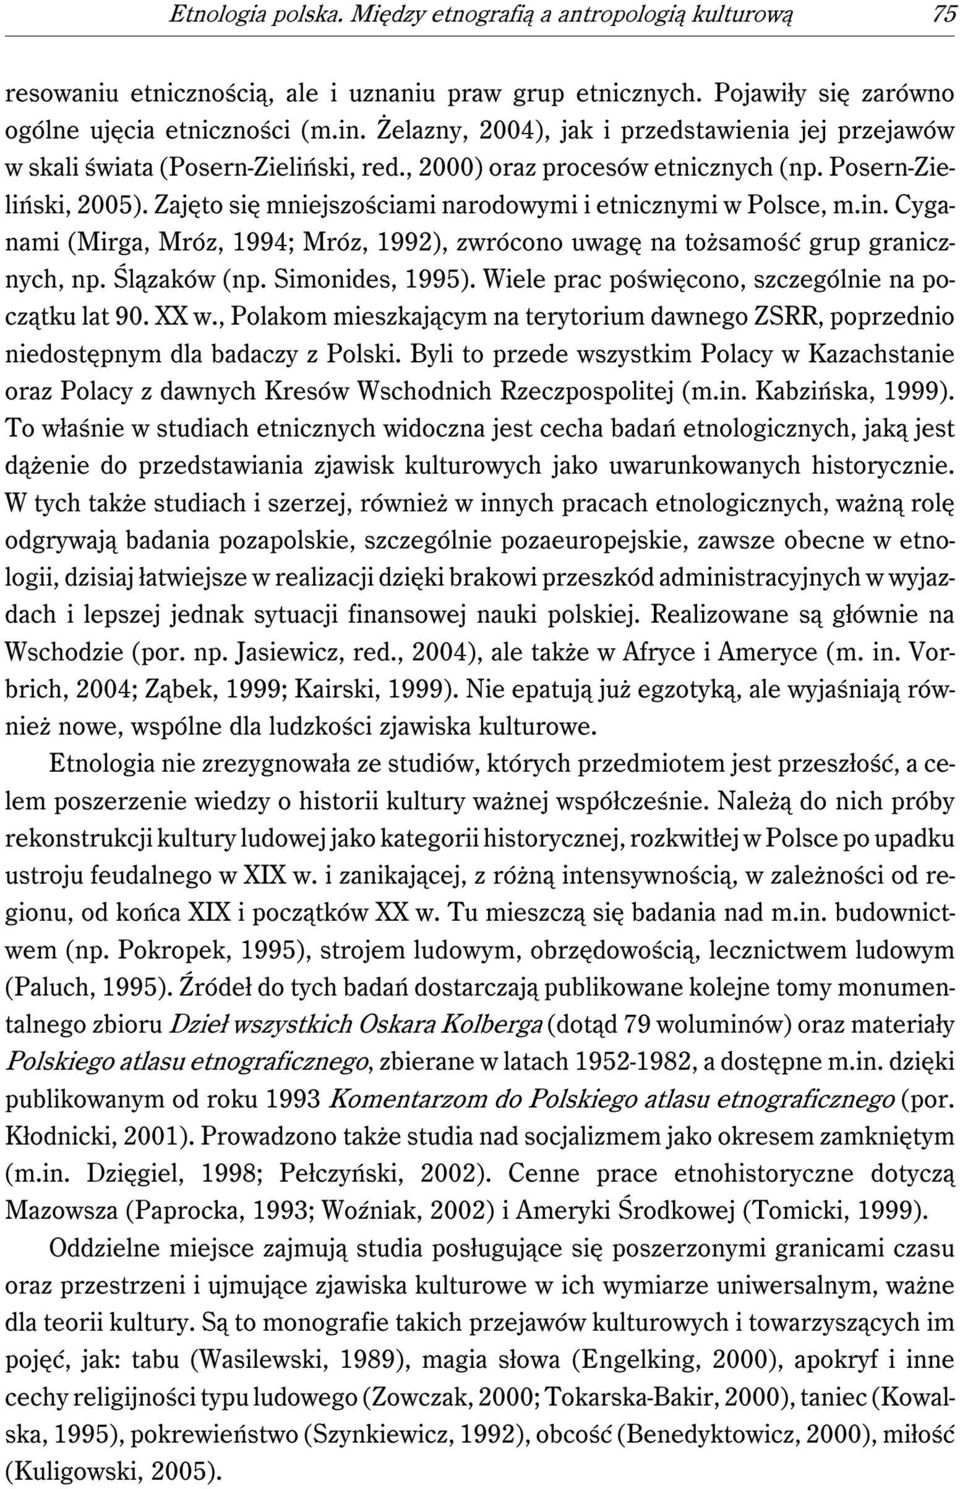 Zajęto się mniejszościami narodowymi i etnicznymi w Polsce, m.in. Cyganami (Mirga, Mróz, 1994; Mróz, 1992), zwrócono uwagę na tożsamość grup granicznych, np. Ślązaków (np. Simonides, 1995).